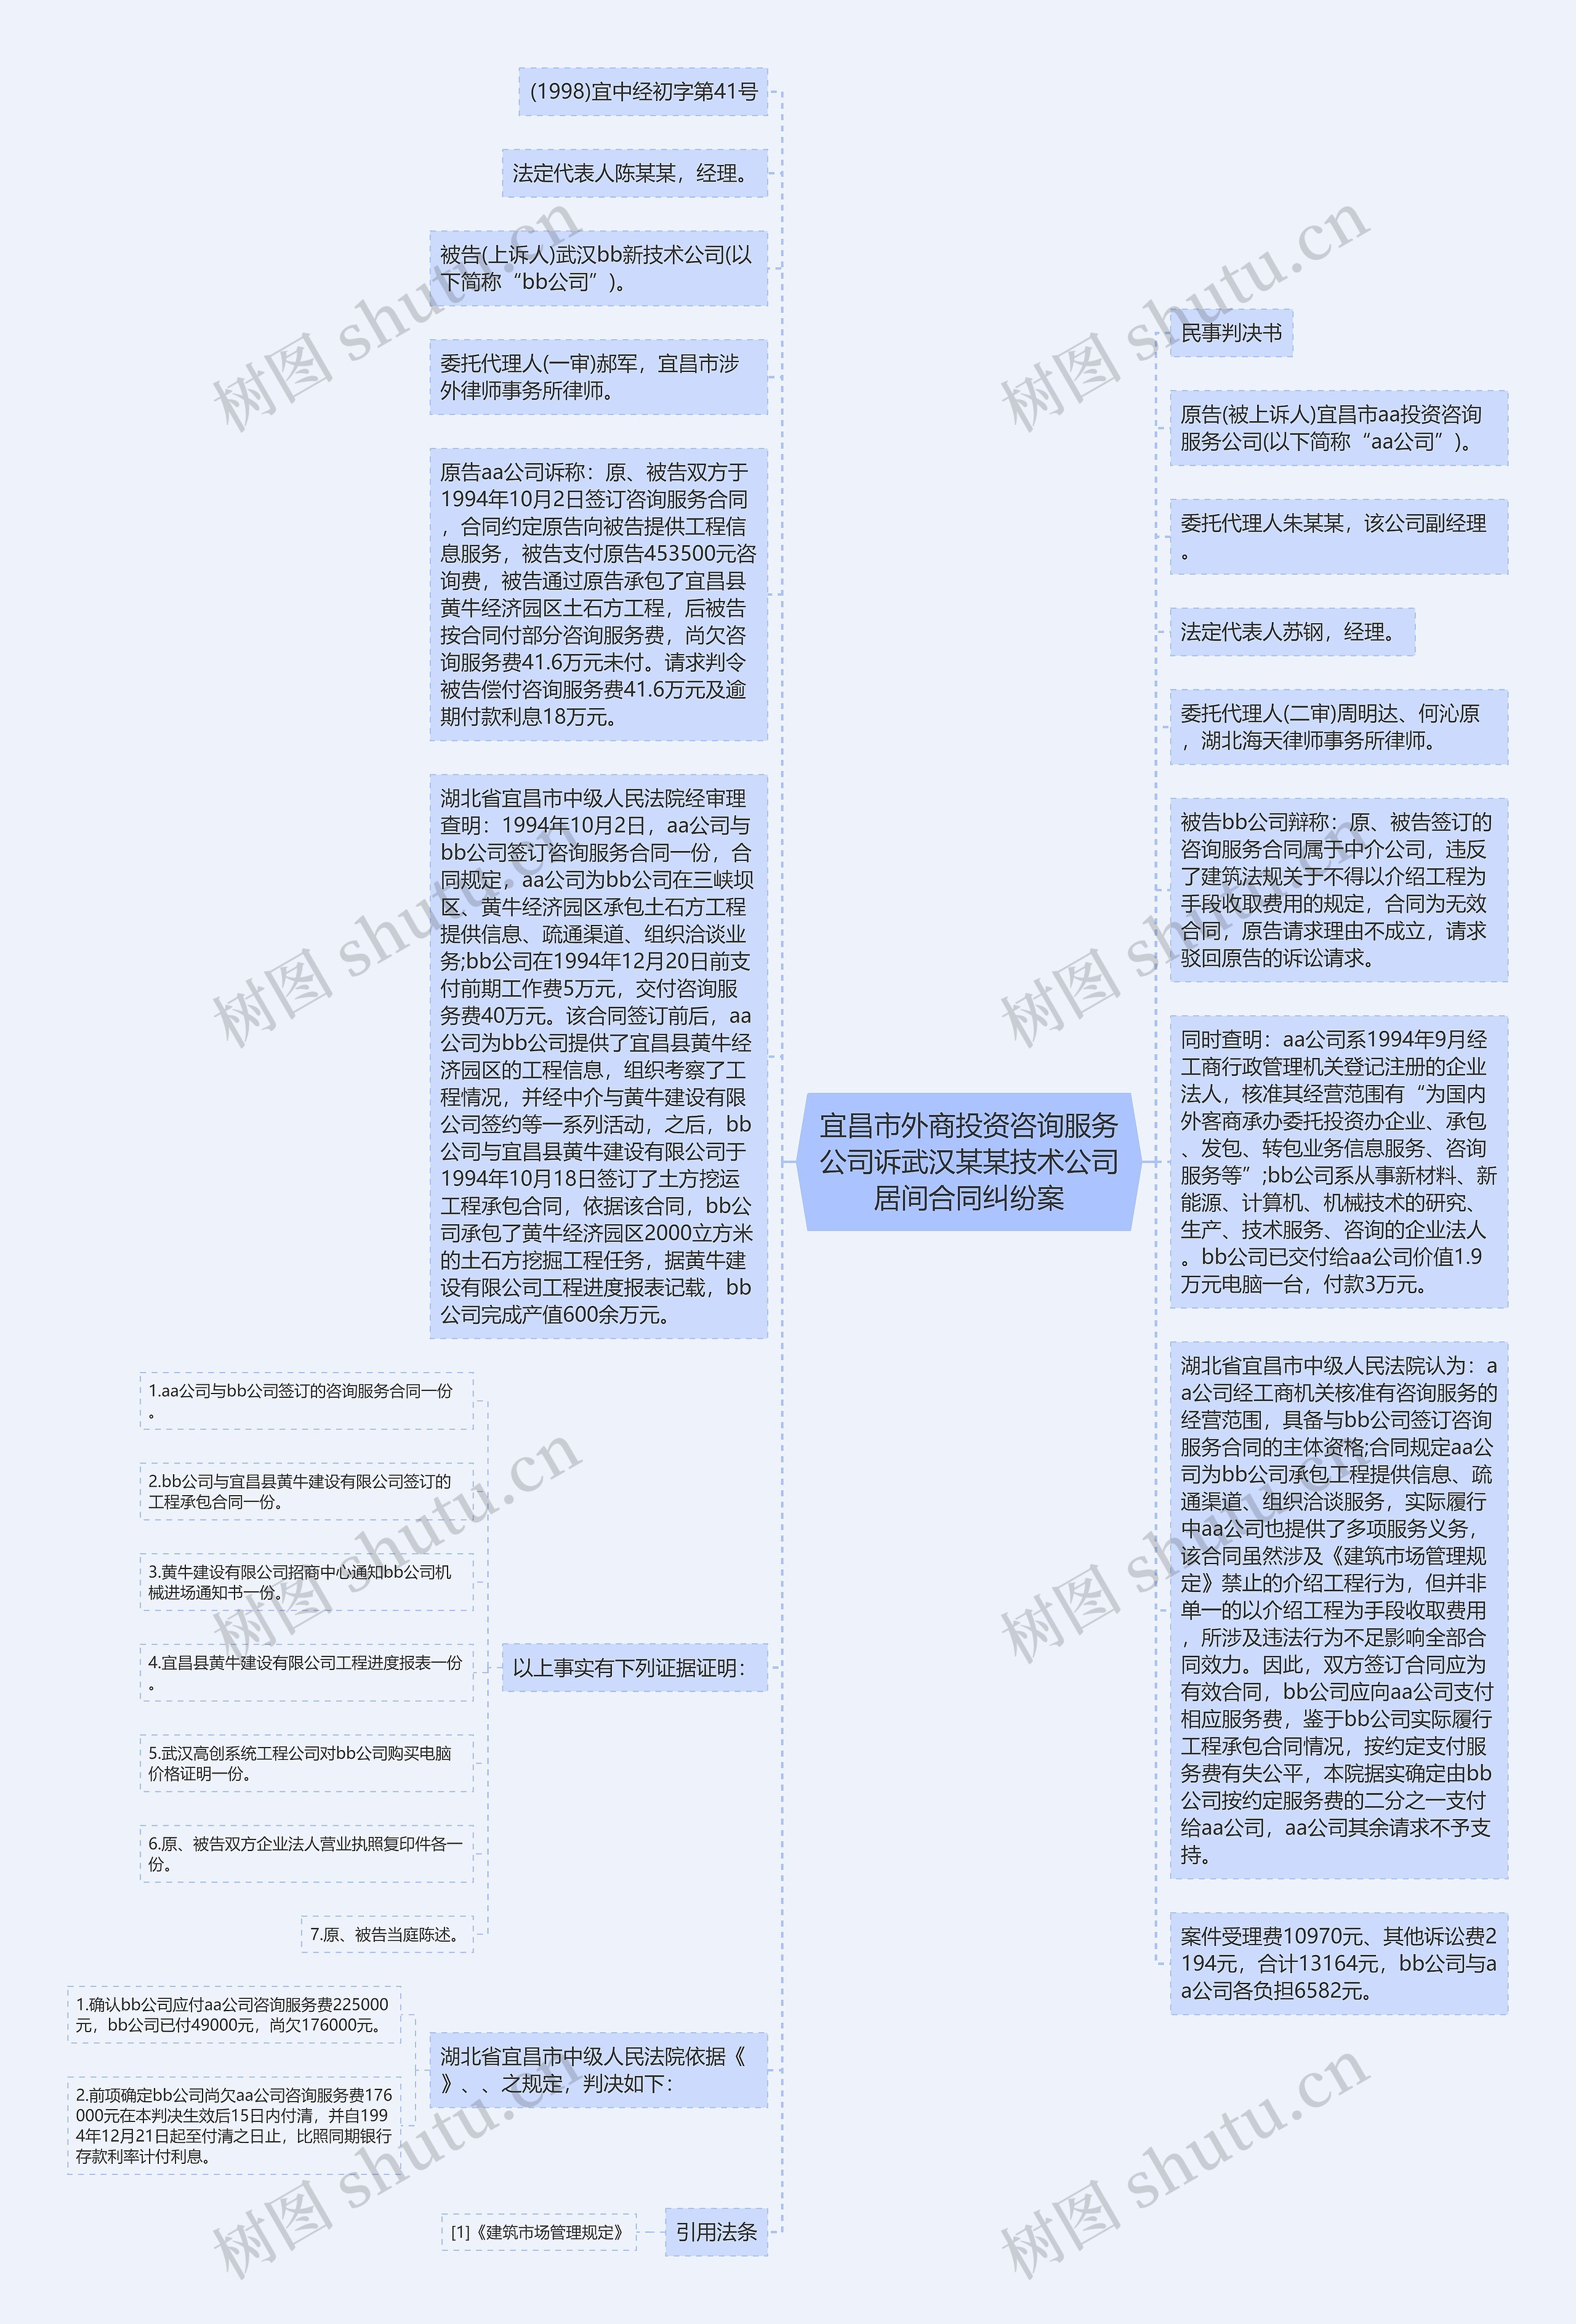 宜昌市外商投资咨询服务公司诉武汉某某技术公司居间合同纠纷案